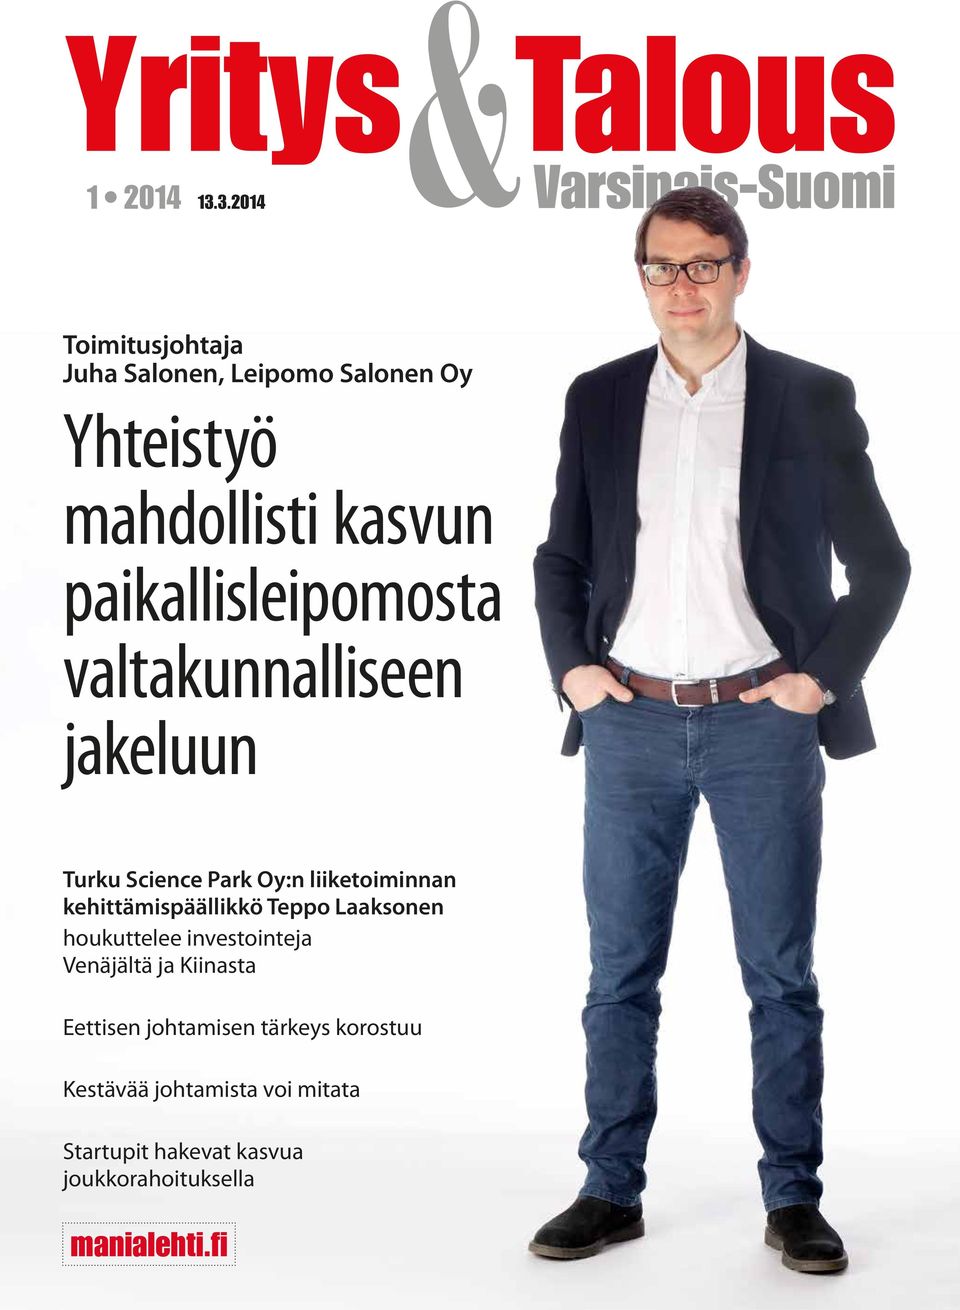 paikallisleipomosta valtakunnalliseen jakeluun Turku Science Park Oy:n liiketoiminnan